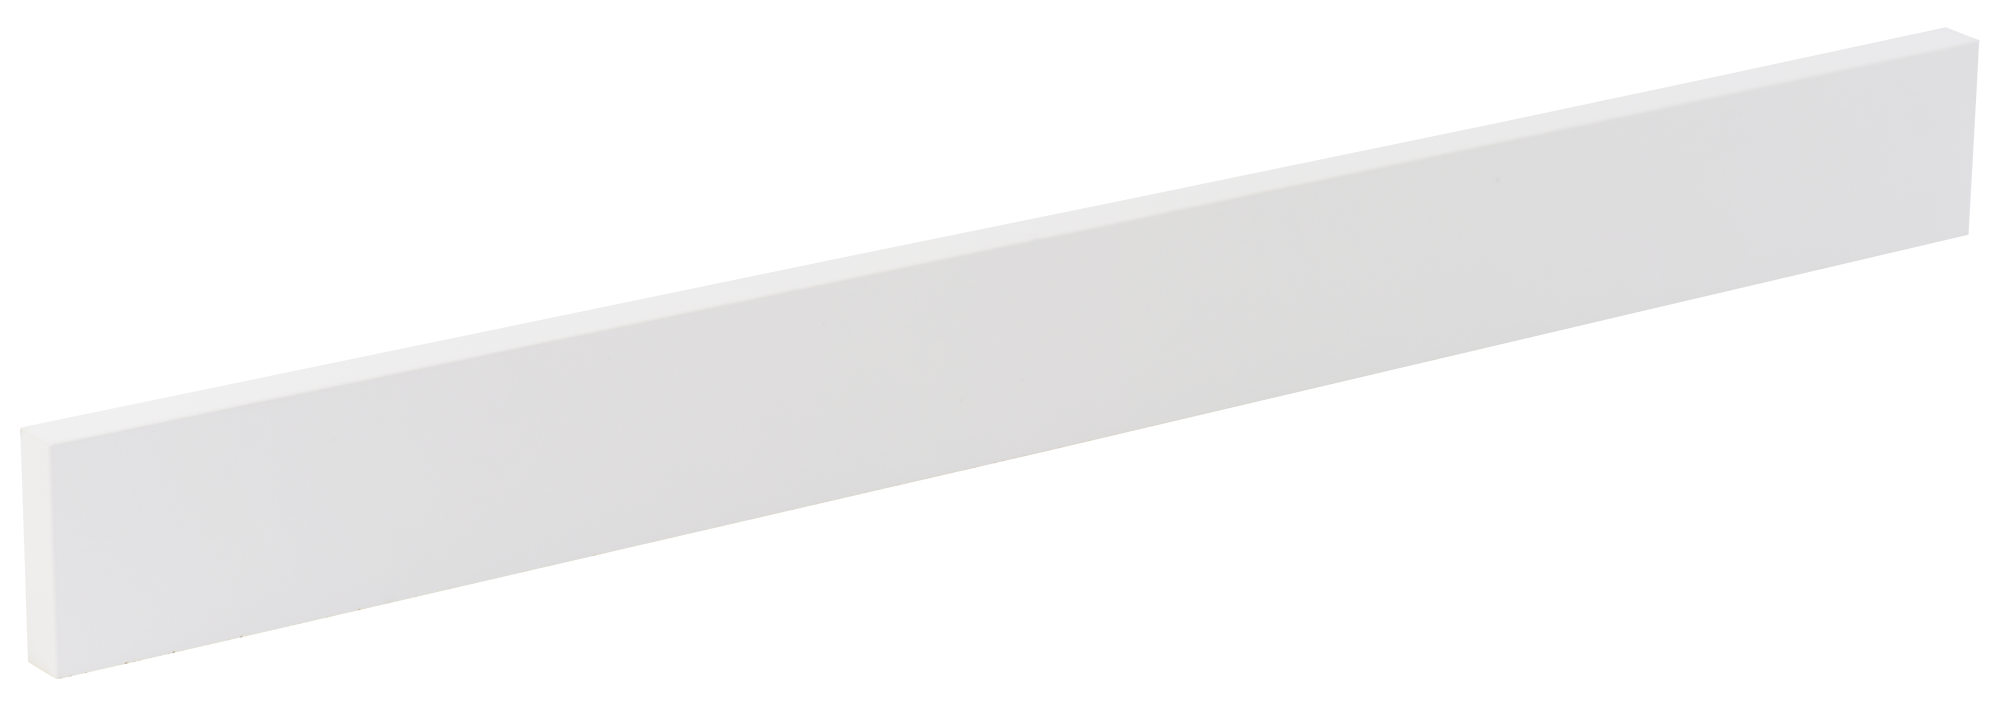 Regleta angular delinia id mikonos blanco 9x76,8 cm